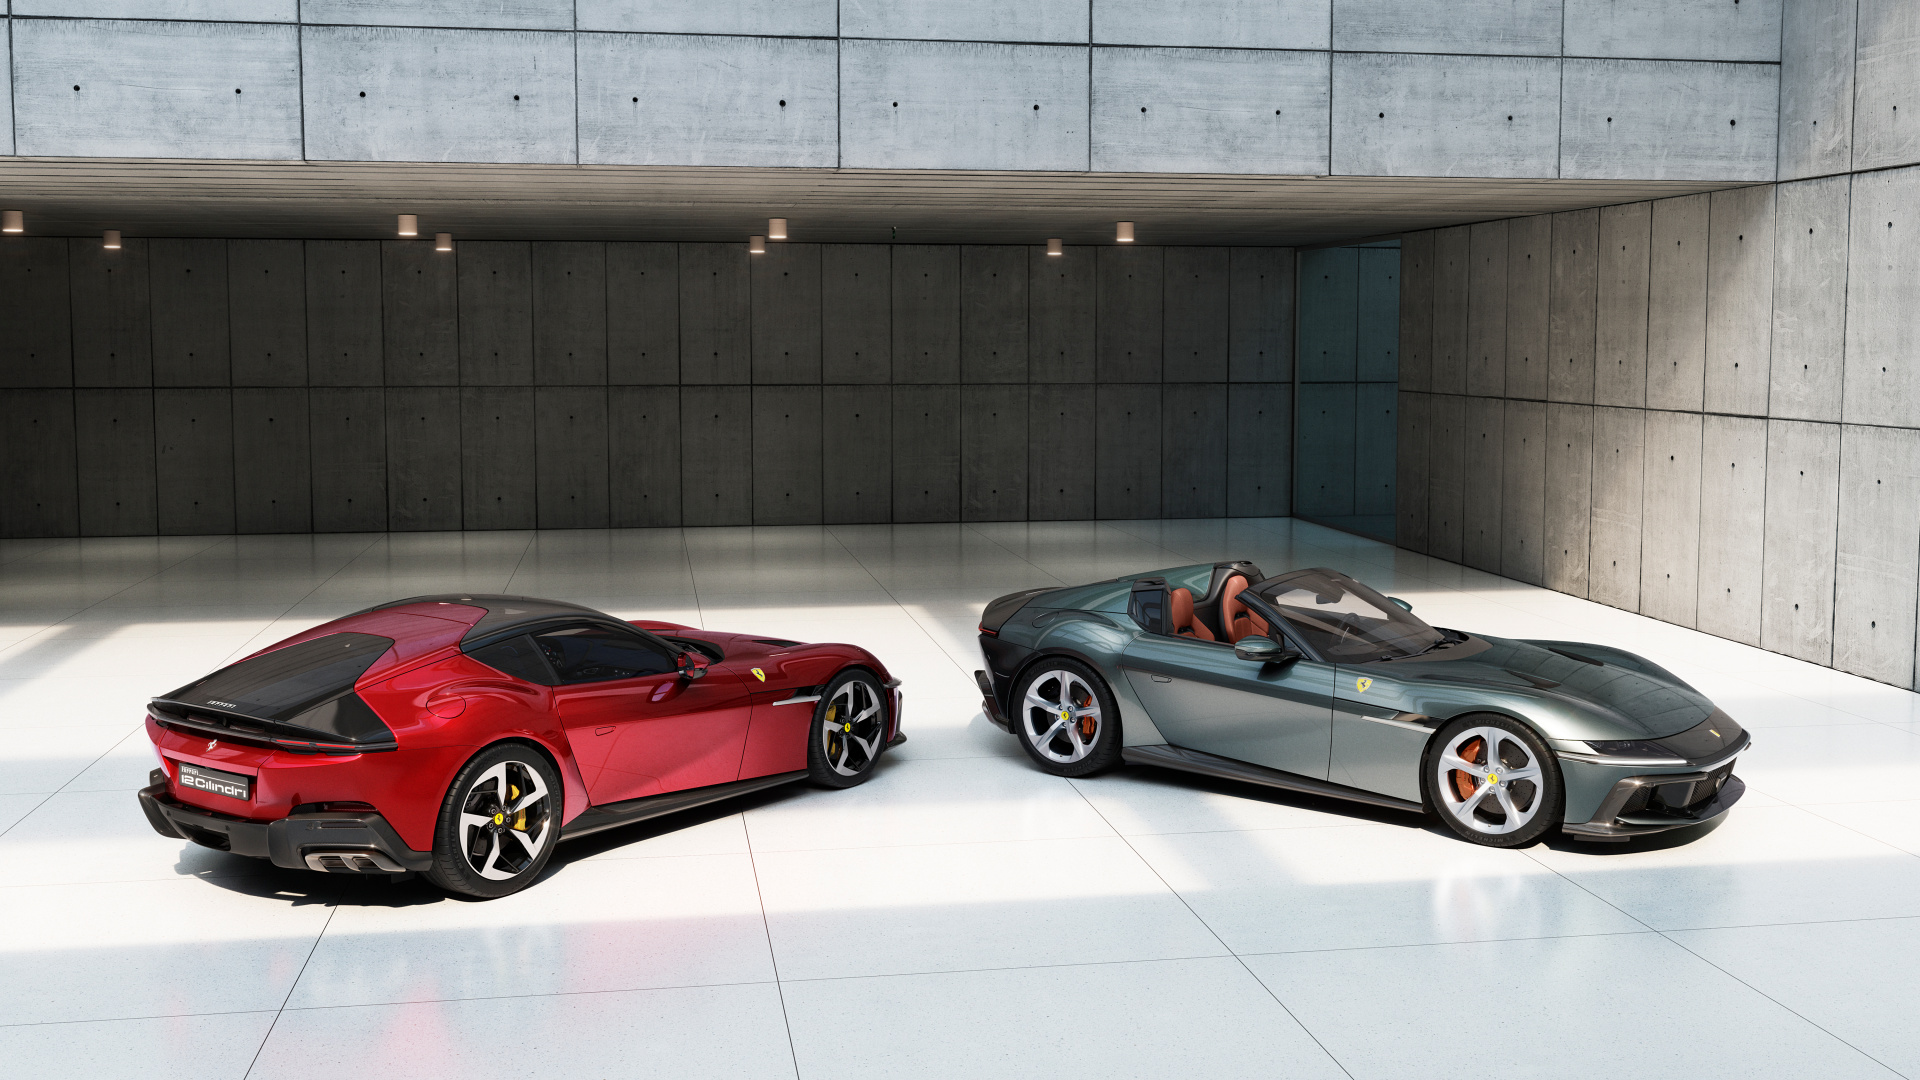 SMALL_New_Ferrari_V12_ext_01_spider_coupe_media_0d642101-2d8f-4c85-8398-5e5ff01fad68